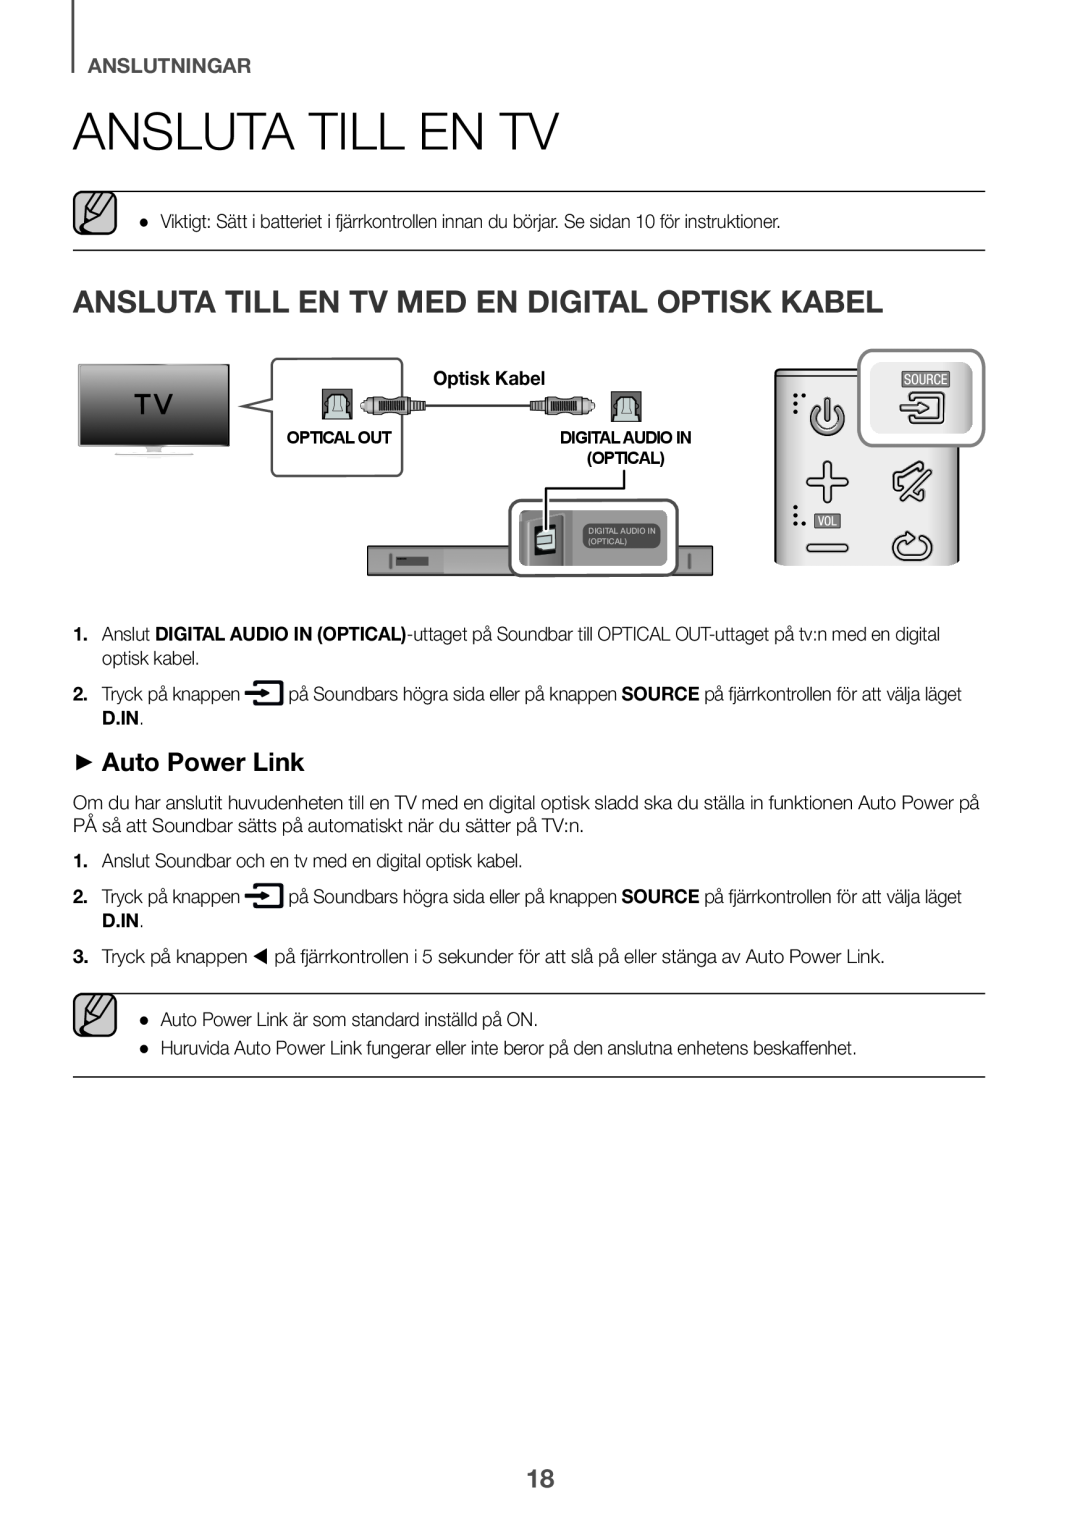 Samsung HW-K651/XN Ansluta till en TV, Ansluta till en tv med en digital optisk kabel, ++Auto Power Link, anslutningar 